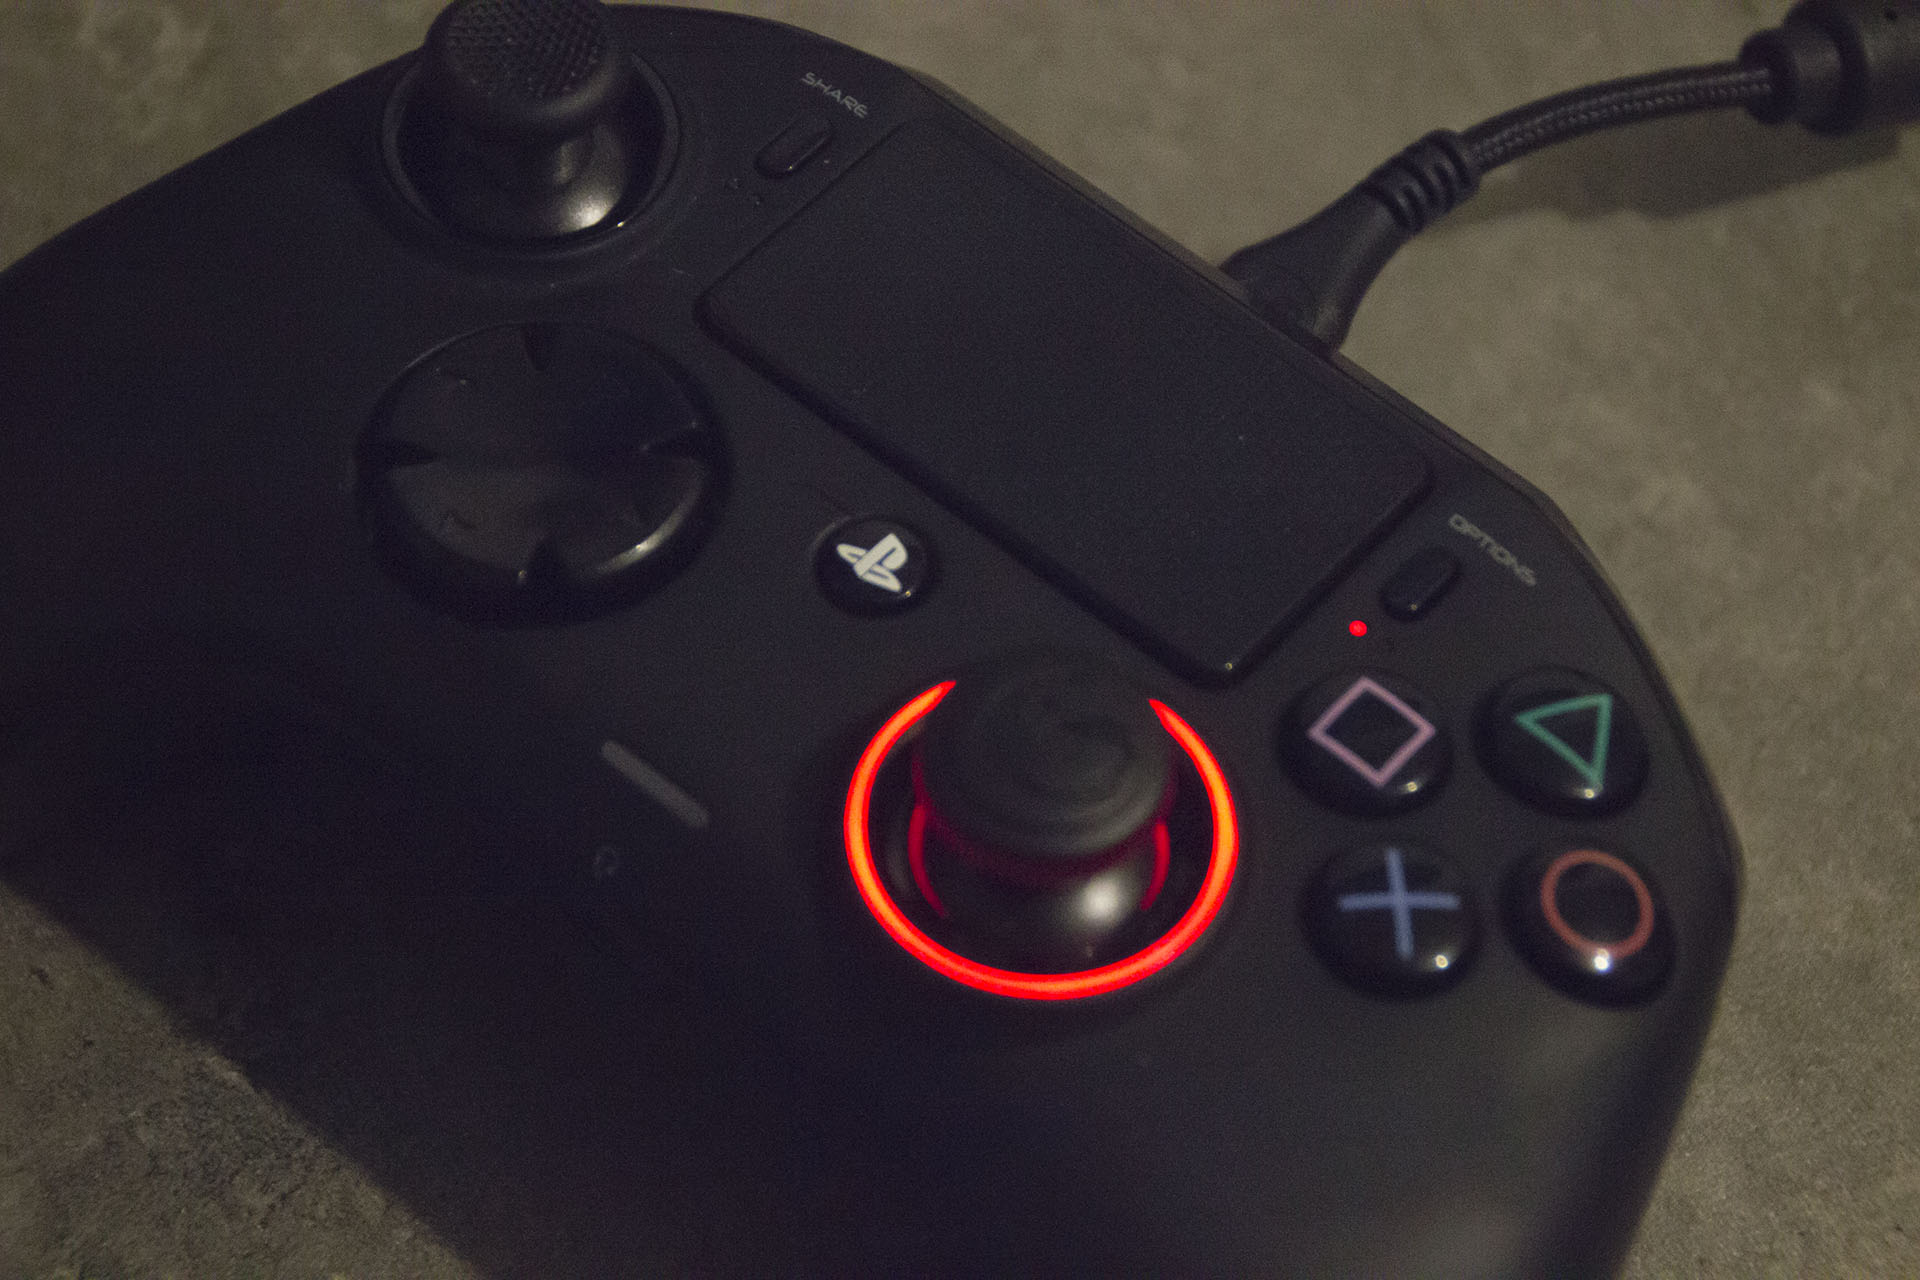 Nacon lance sa manette Revolution X Pro Controller pour Xbox et PC